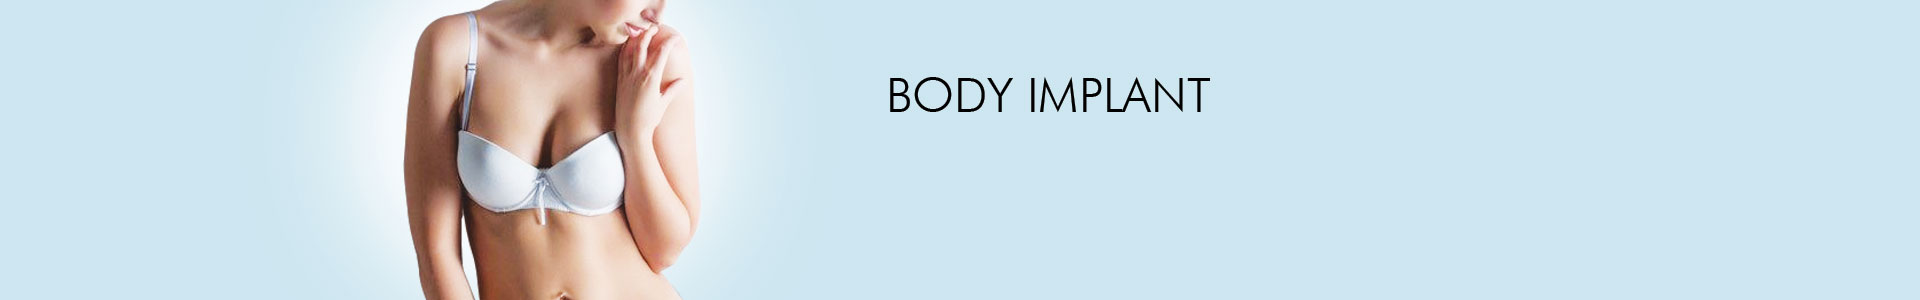 Body Implant